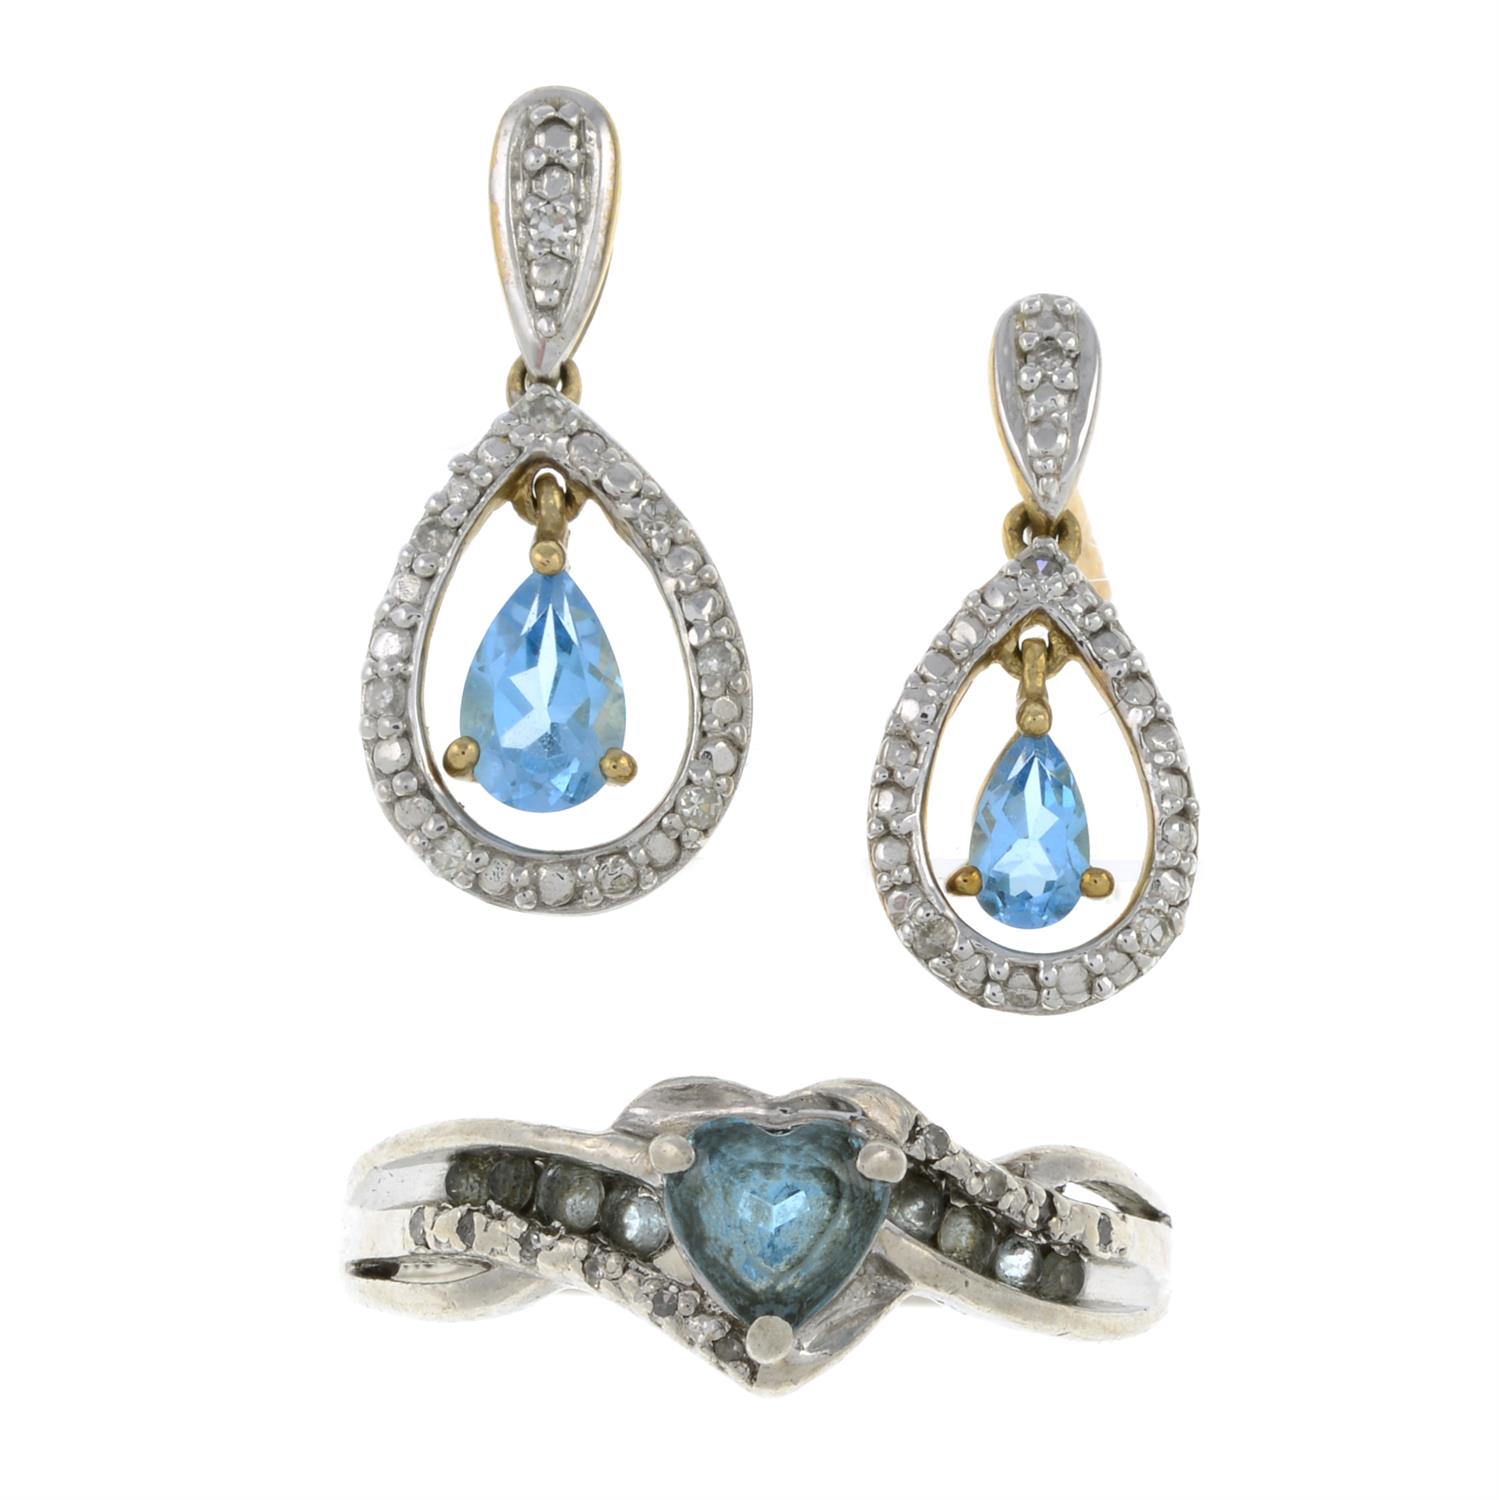 Gem-set ring, pendant & single earring